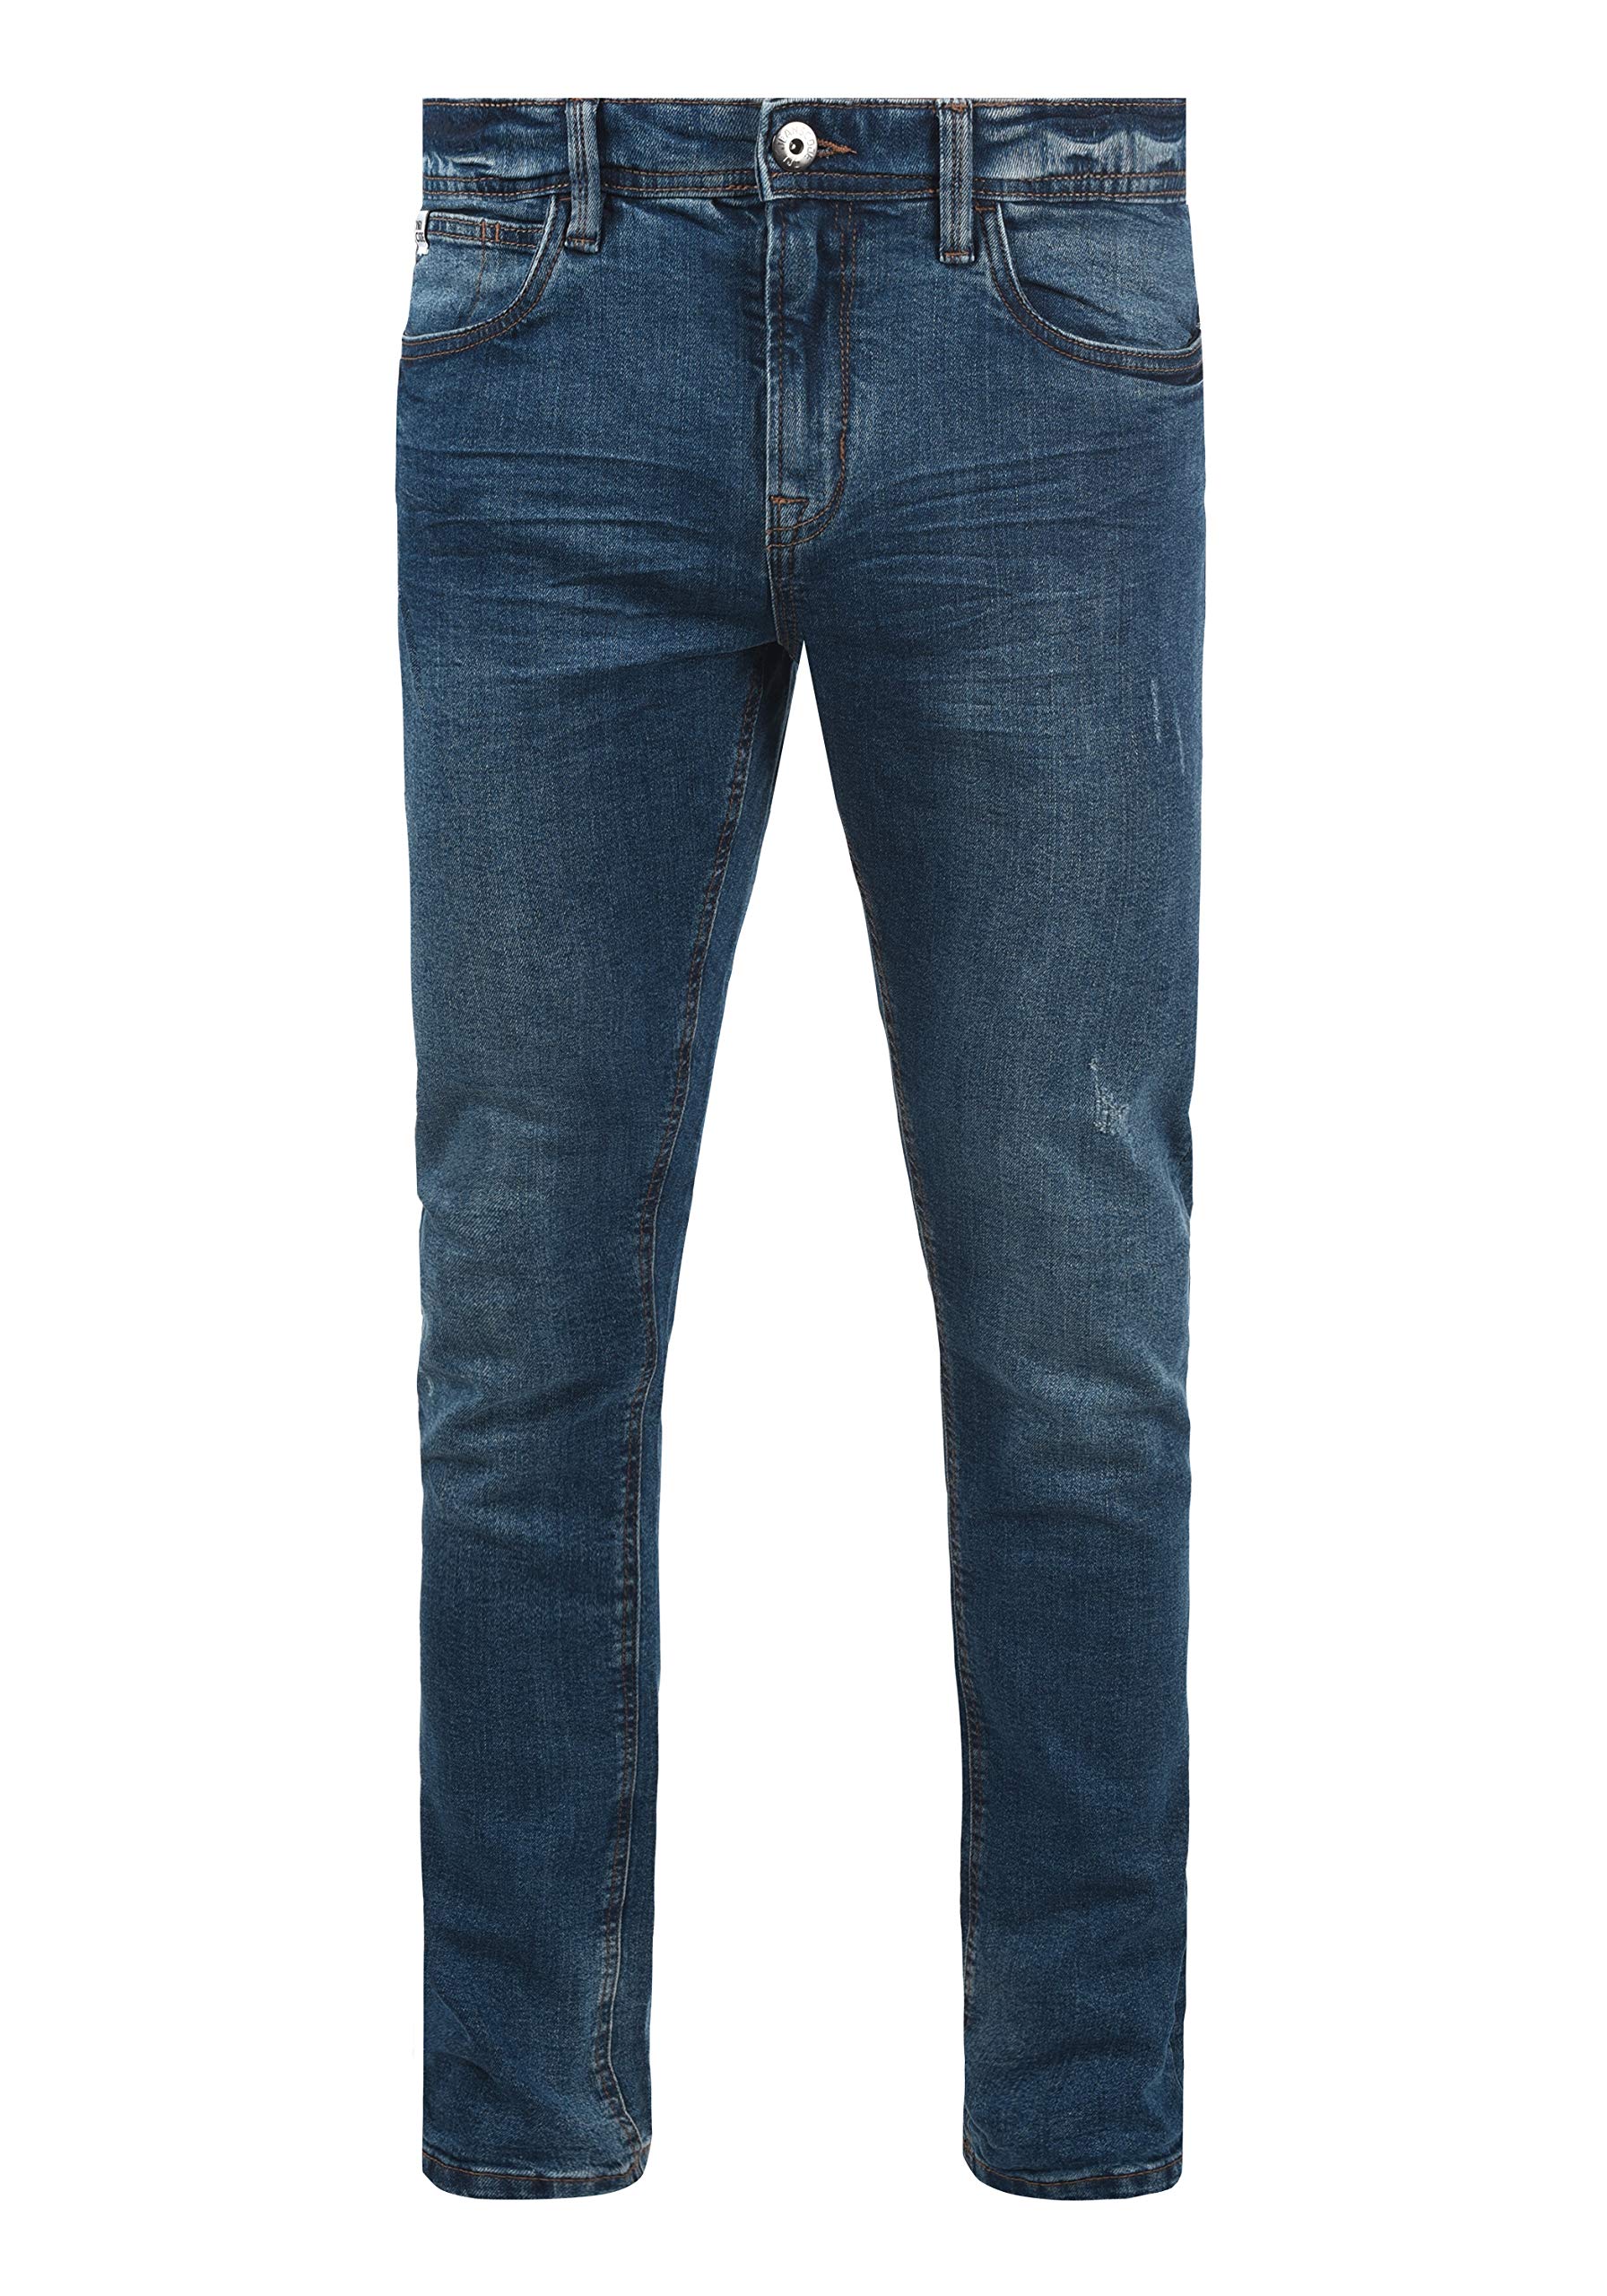 Indicode IDAldersgate Herren Jeans Hose Denim mit Stretch und Destroyed-Look Slim Fit, Größe:33/32, Farbe:Medium Indigo (869)